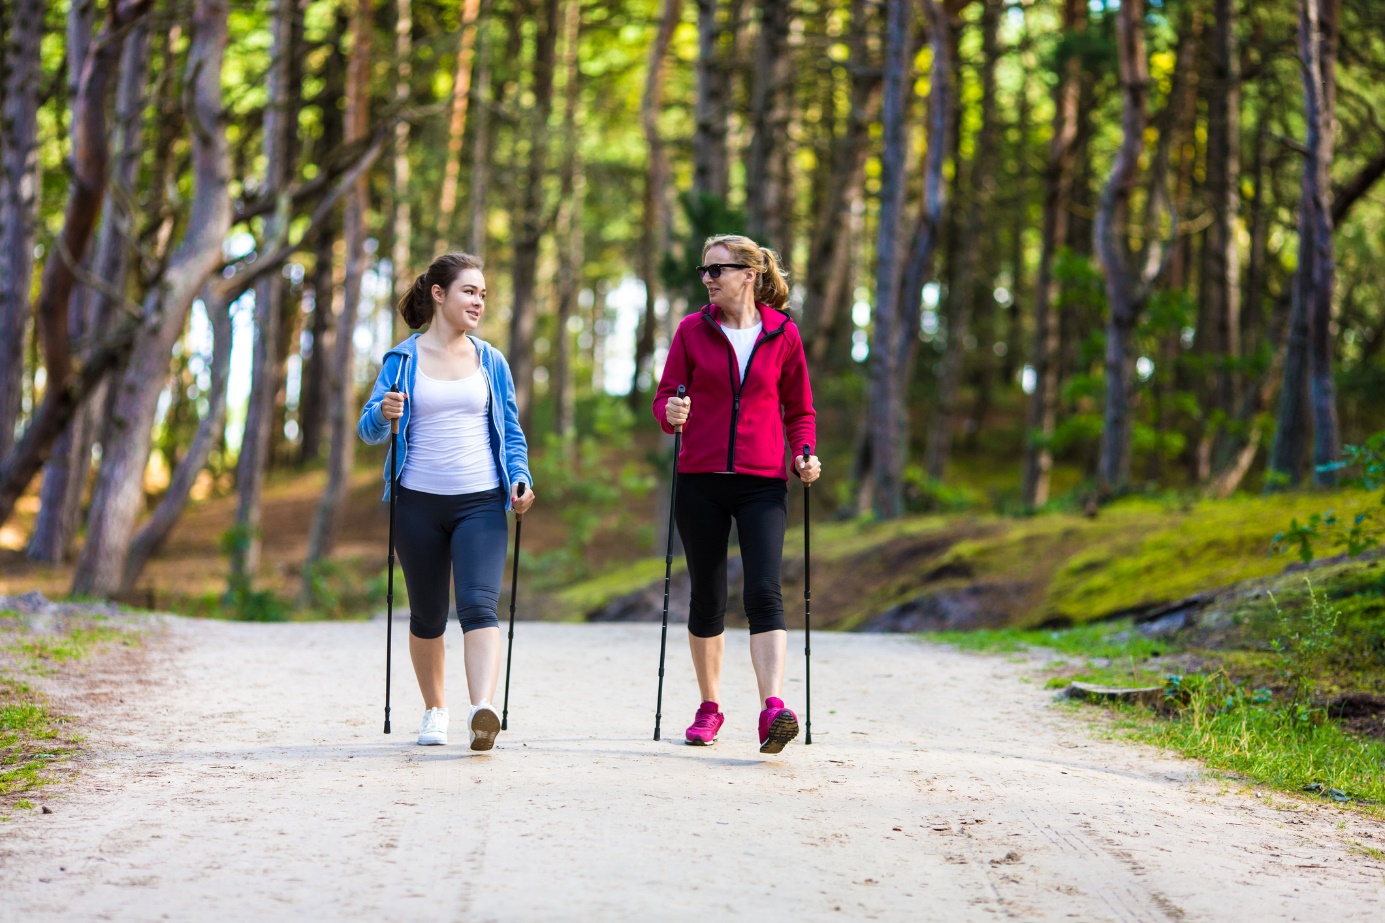 Nordic walking: Severskou chôdzou pre zdravie? Spoznajte účinky a vhodnú výbavu